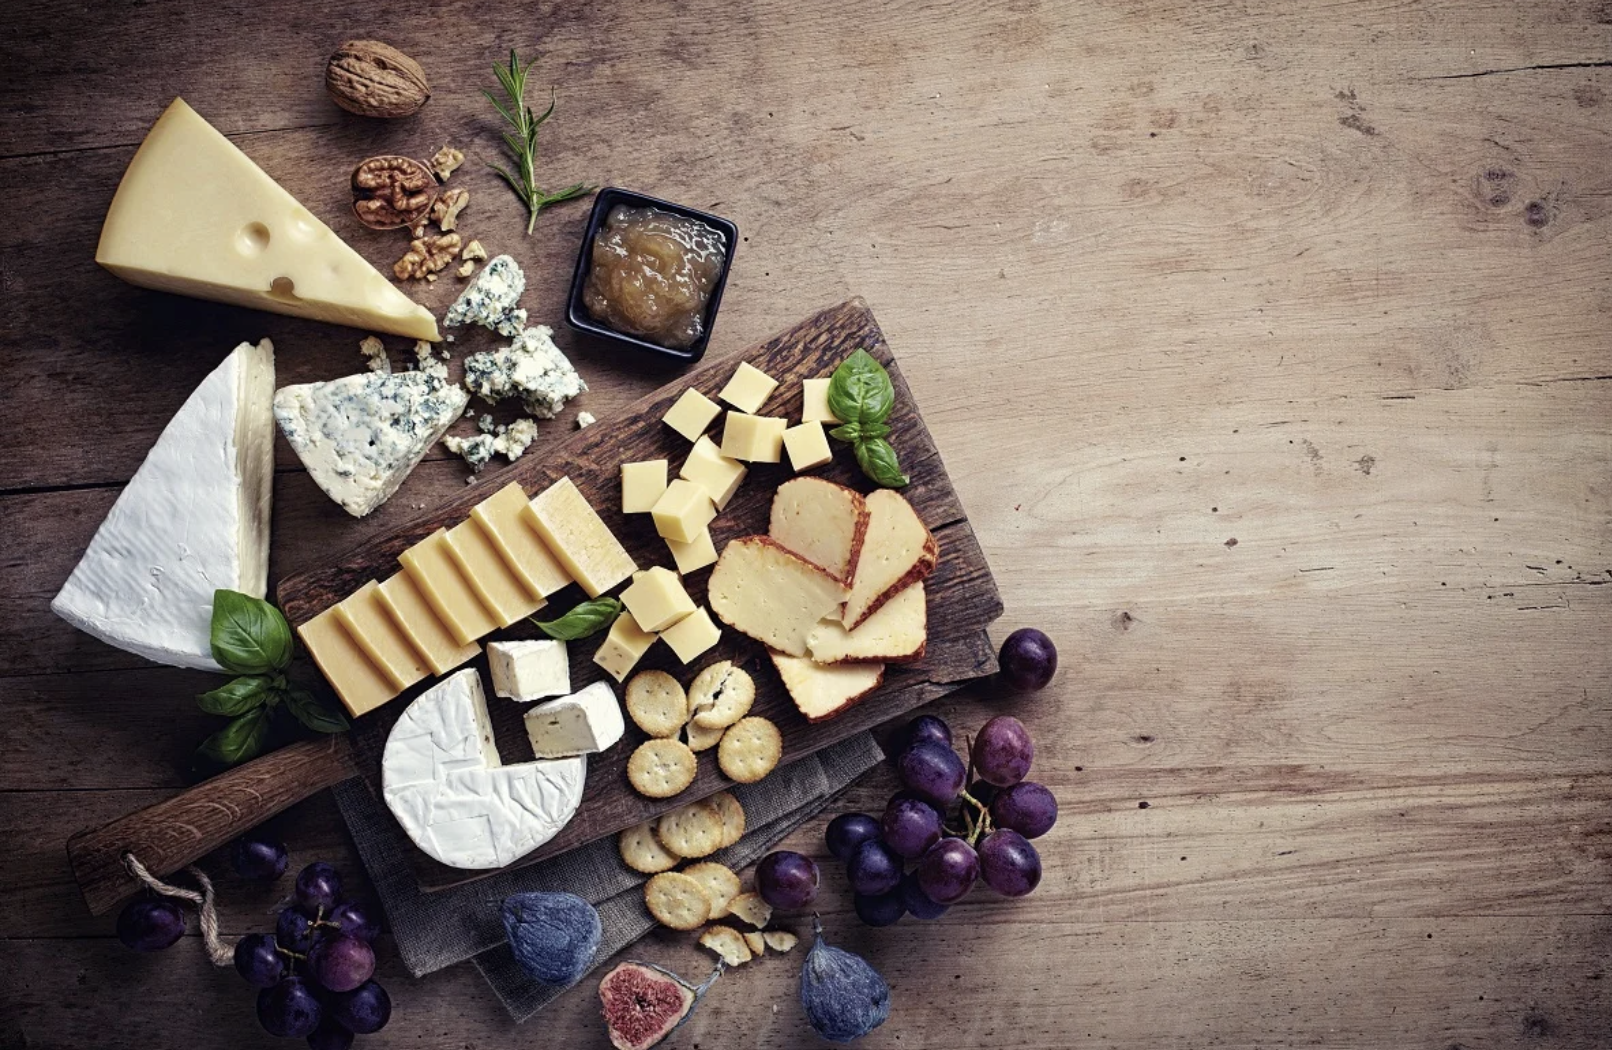 Αυτό είναι το καλύτερο τυρί για να φας: Ιδανικό για σένα που γυμνάζεσαι και κάνεις διατροφή